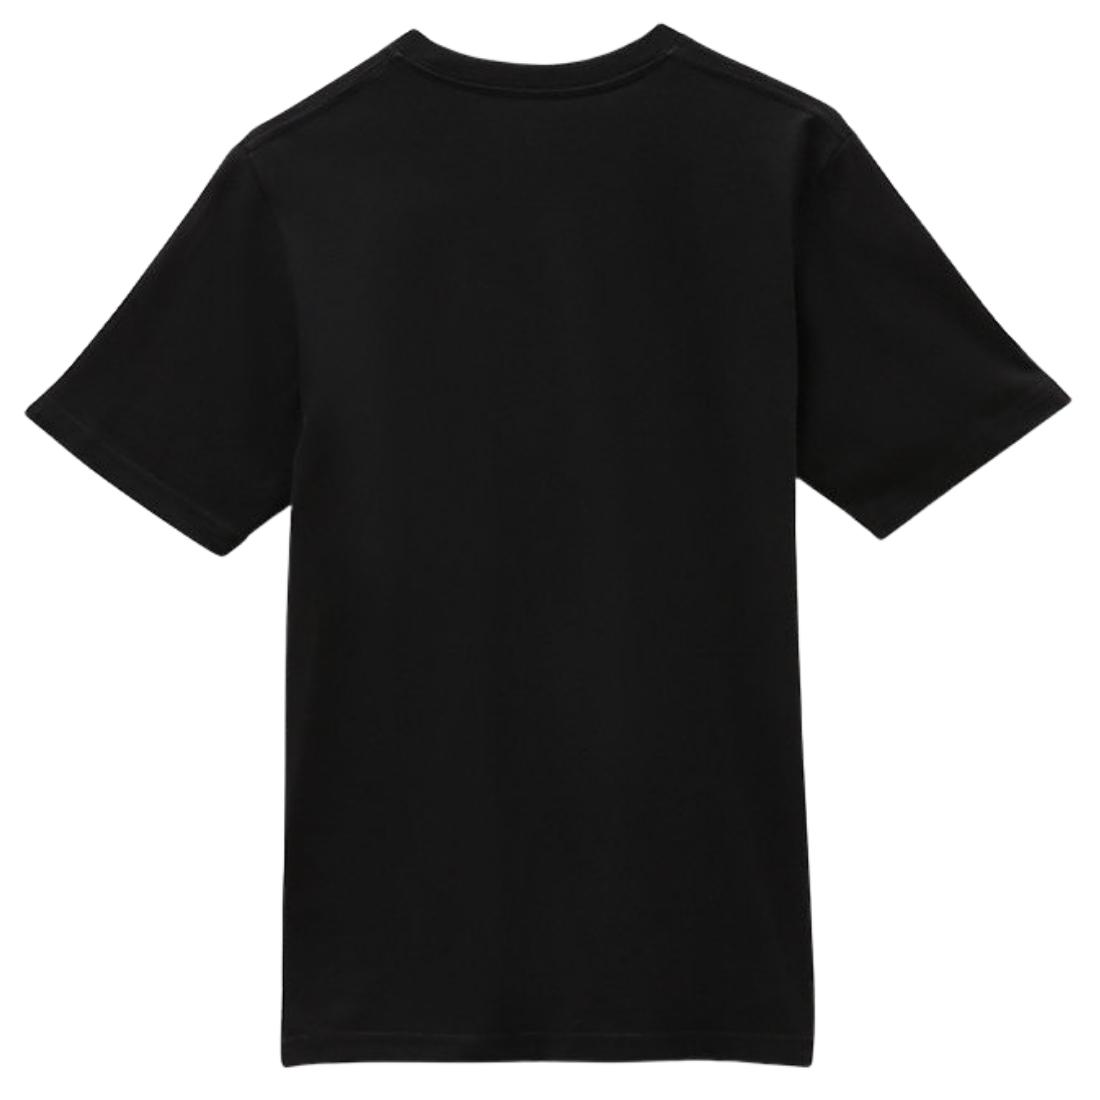 Vans Kids Maze T-Shirt - Black